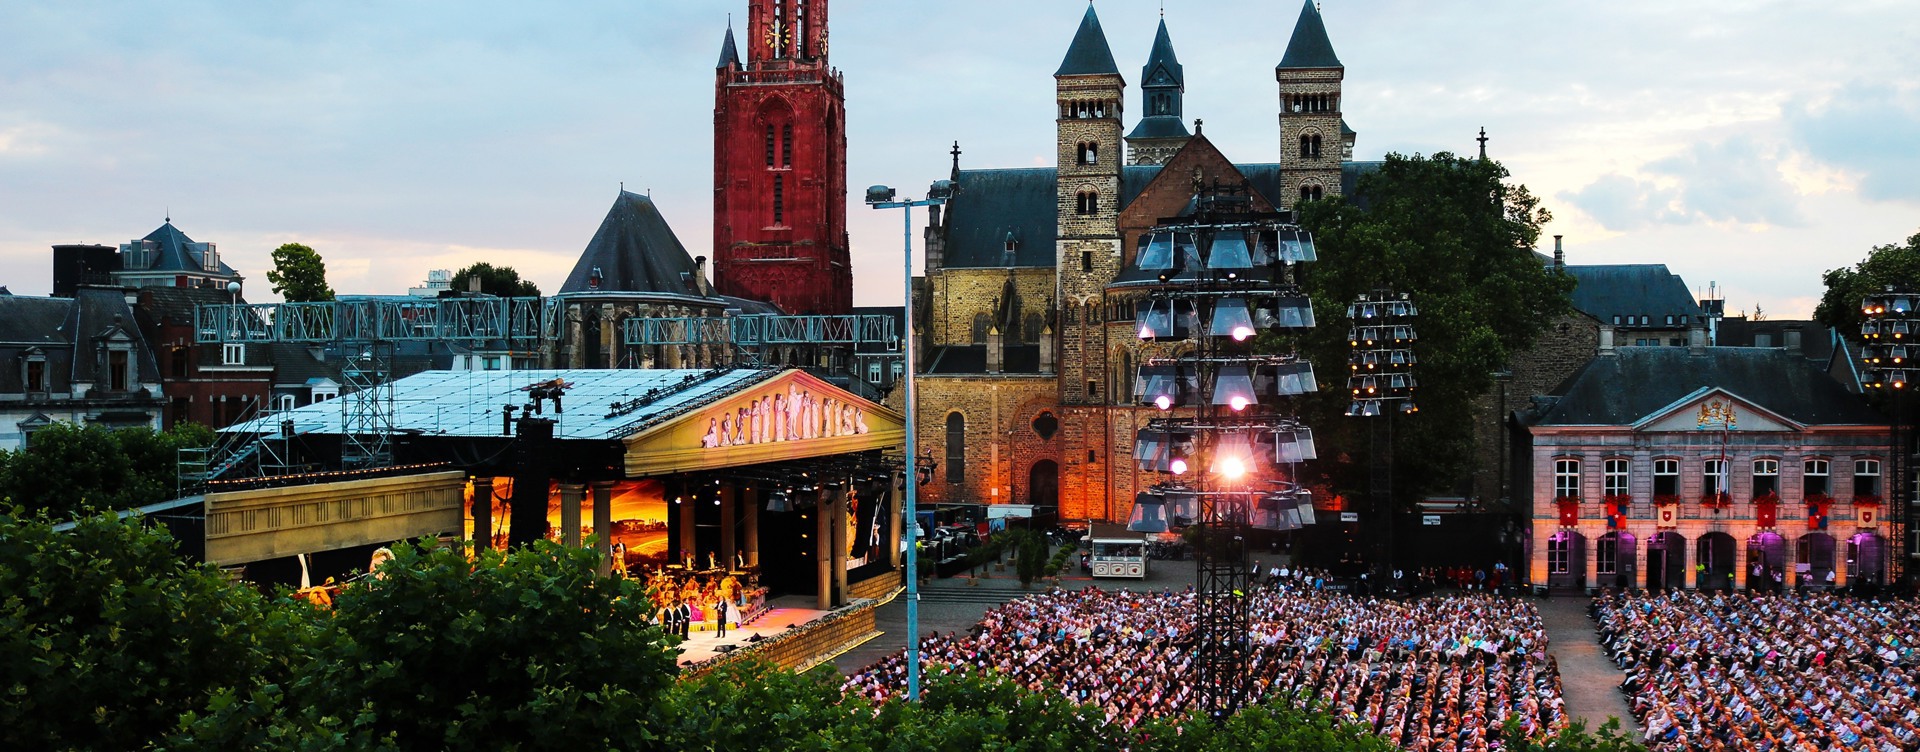 Maak je verblijf in Maastricht onvergetelijk
en bezoek één van de vele evenementen